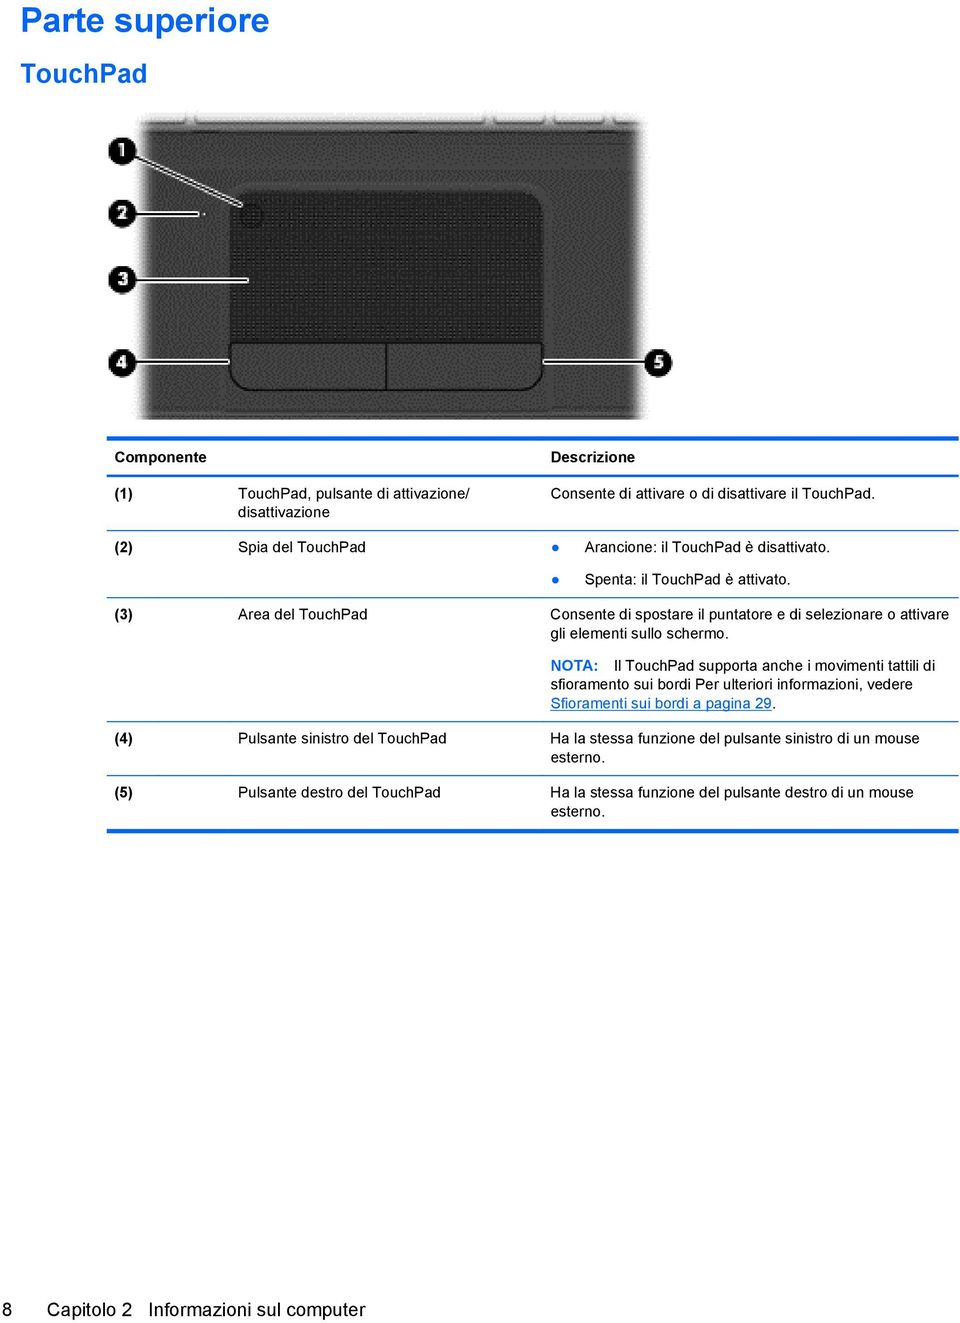 (3) Area del TouchPad Consente di spostare il puntatore e di selezionare o attivare gli elementi sullo schermo.